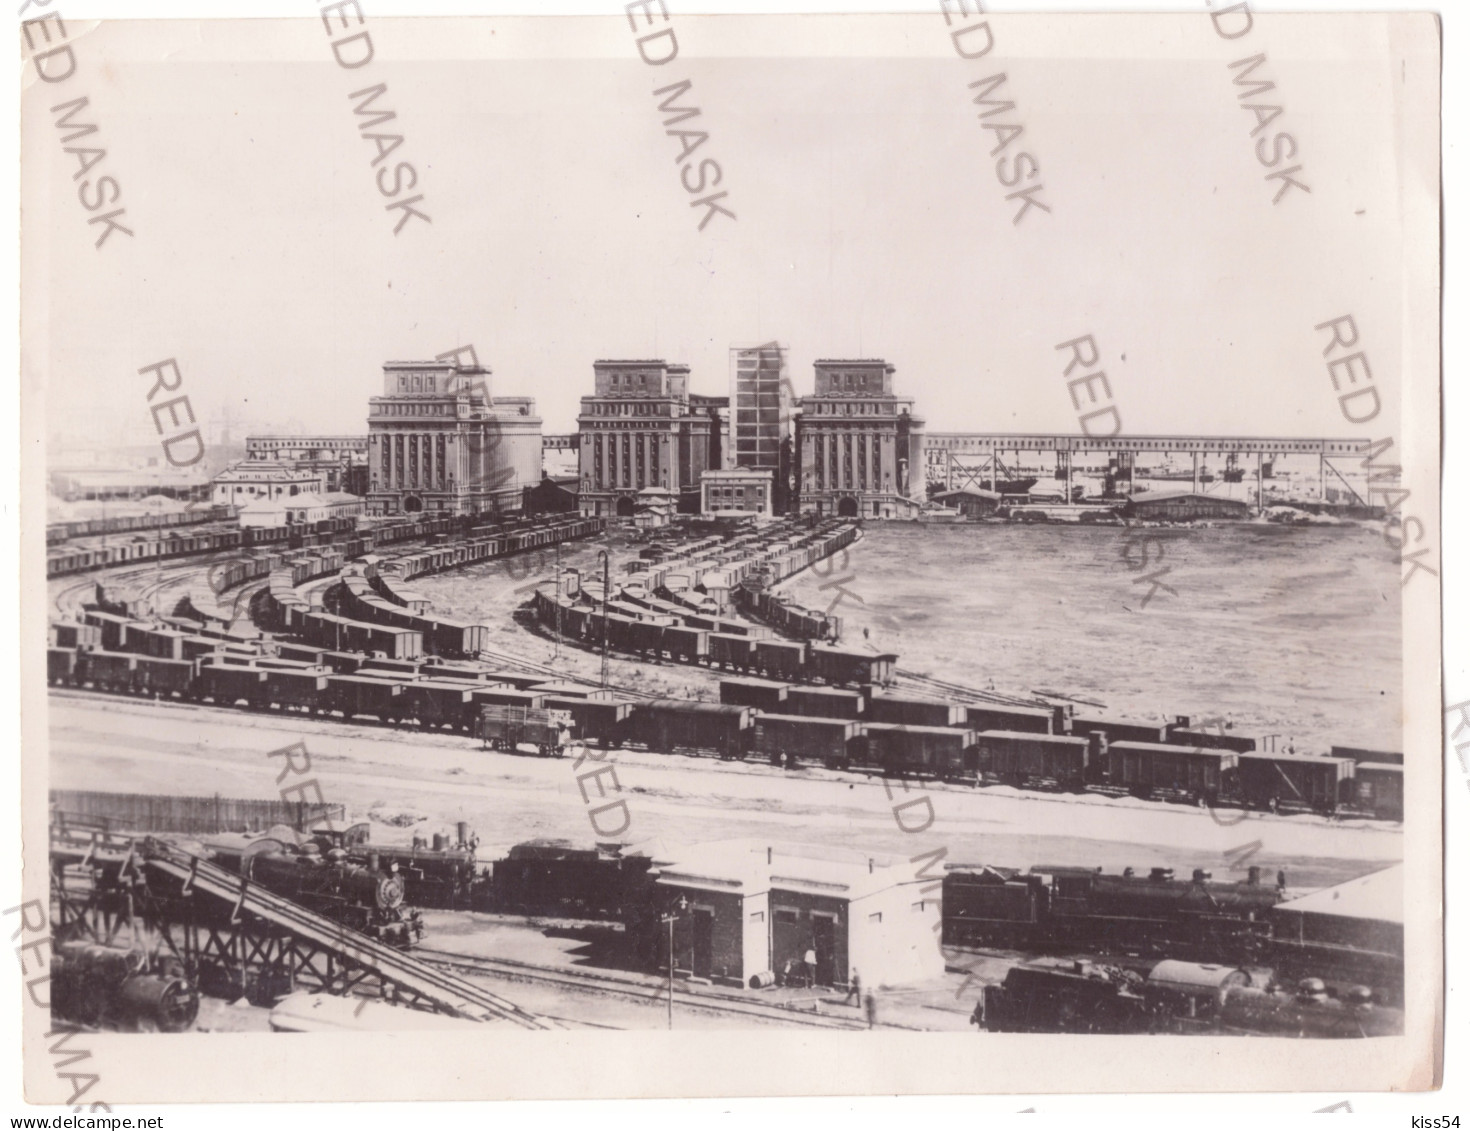 RO 06 - 19115 CONSTANTA, Silozurile, Trains ( 21/16 Cm ) - Old Press Photo - 1939 - Trains